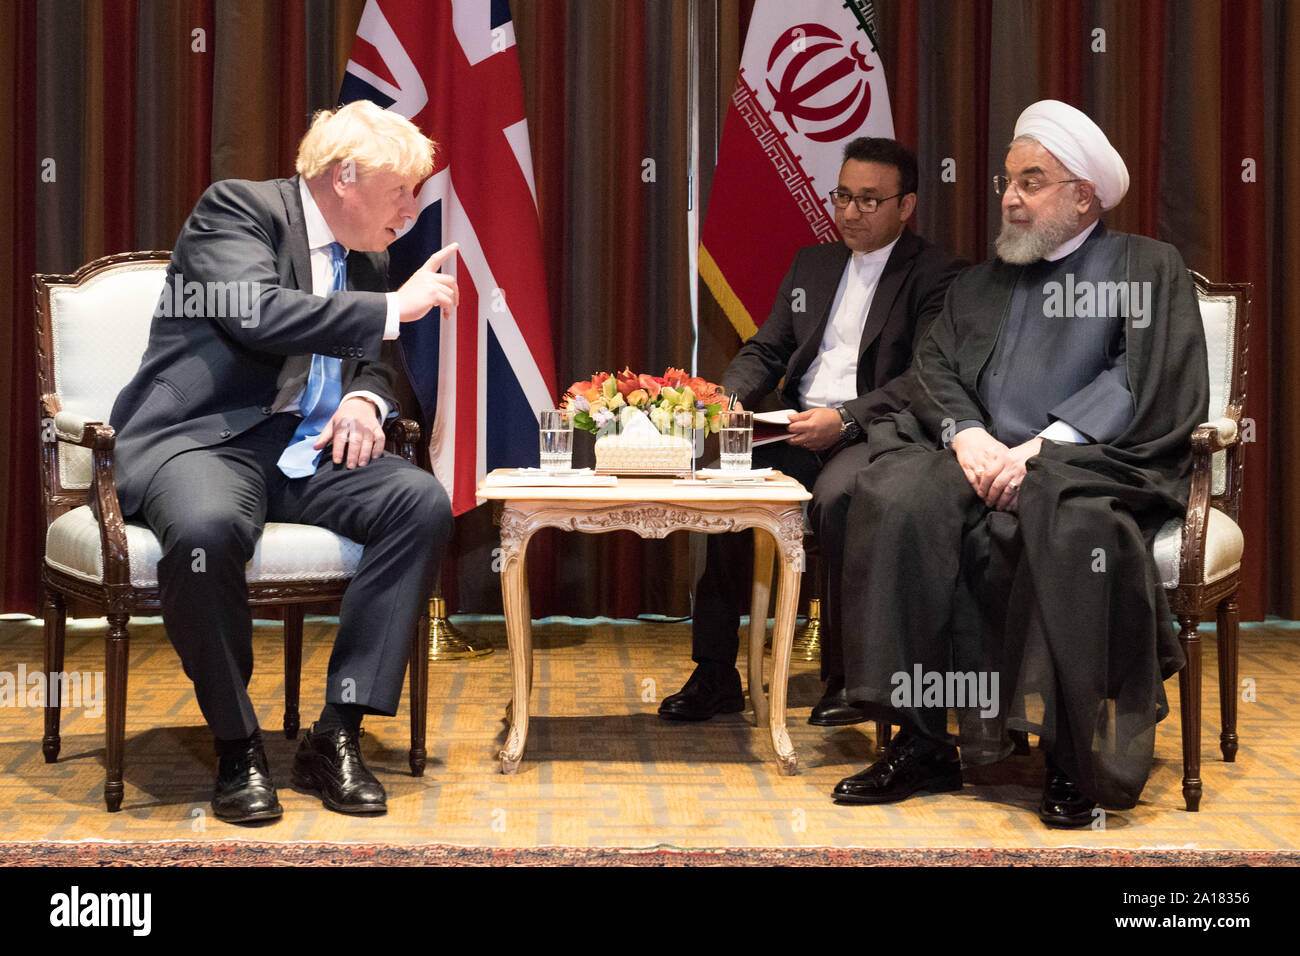 Il primo ministro Boris Johnson (sinistra) un incontro con il presidente dell'Iran Hassan Rouhani (destra) incontro alla 74a sessione dell'Assemblea generale delle Nazioni Unite, presso la sede delle Nazioni Unite a New York, Stati Uniti d'America. Foto Stock